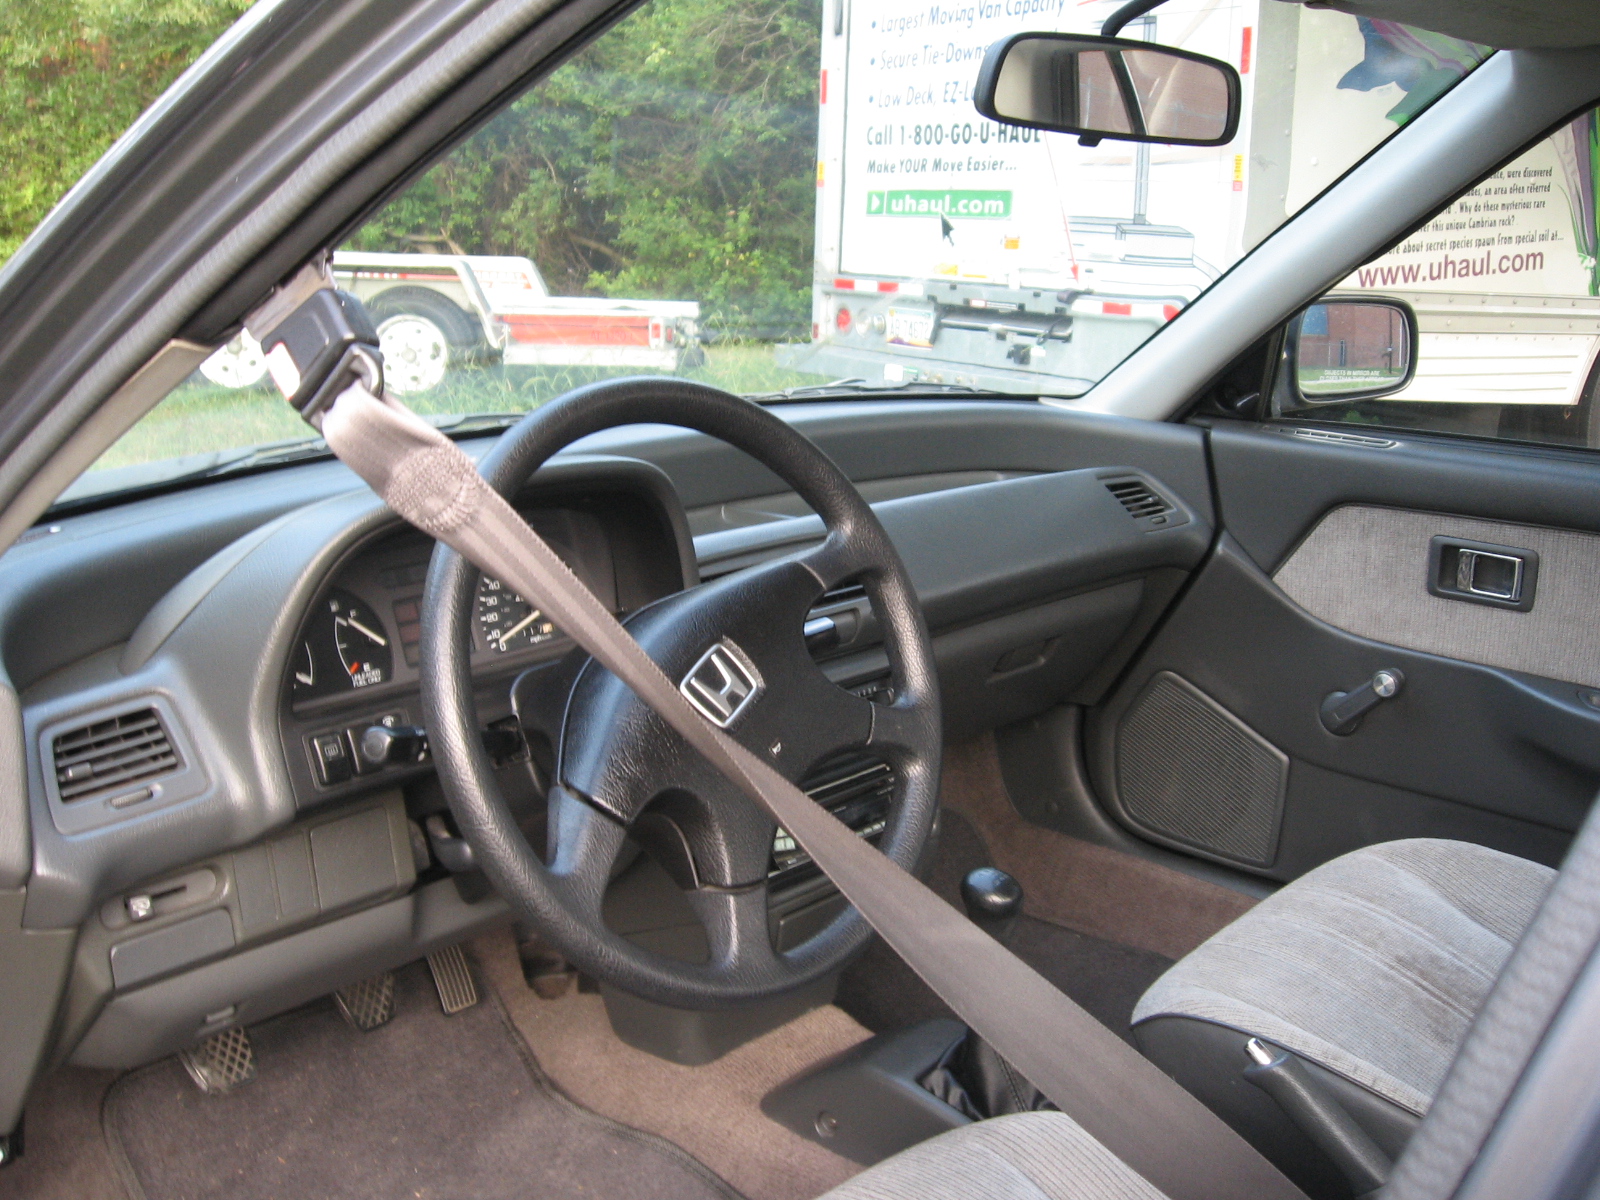 1990 car seat